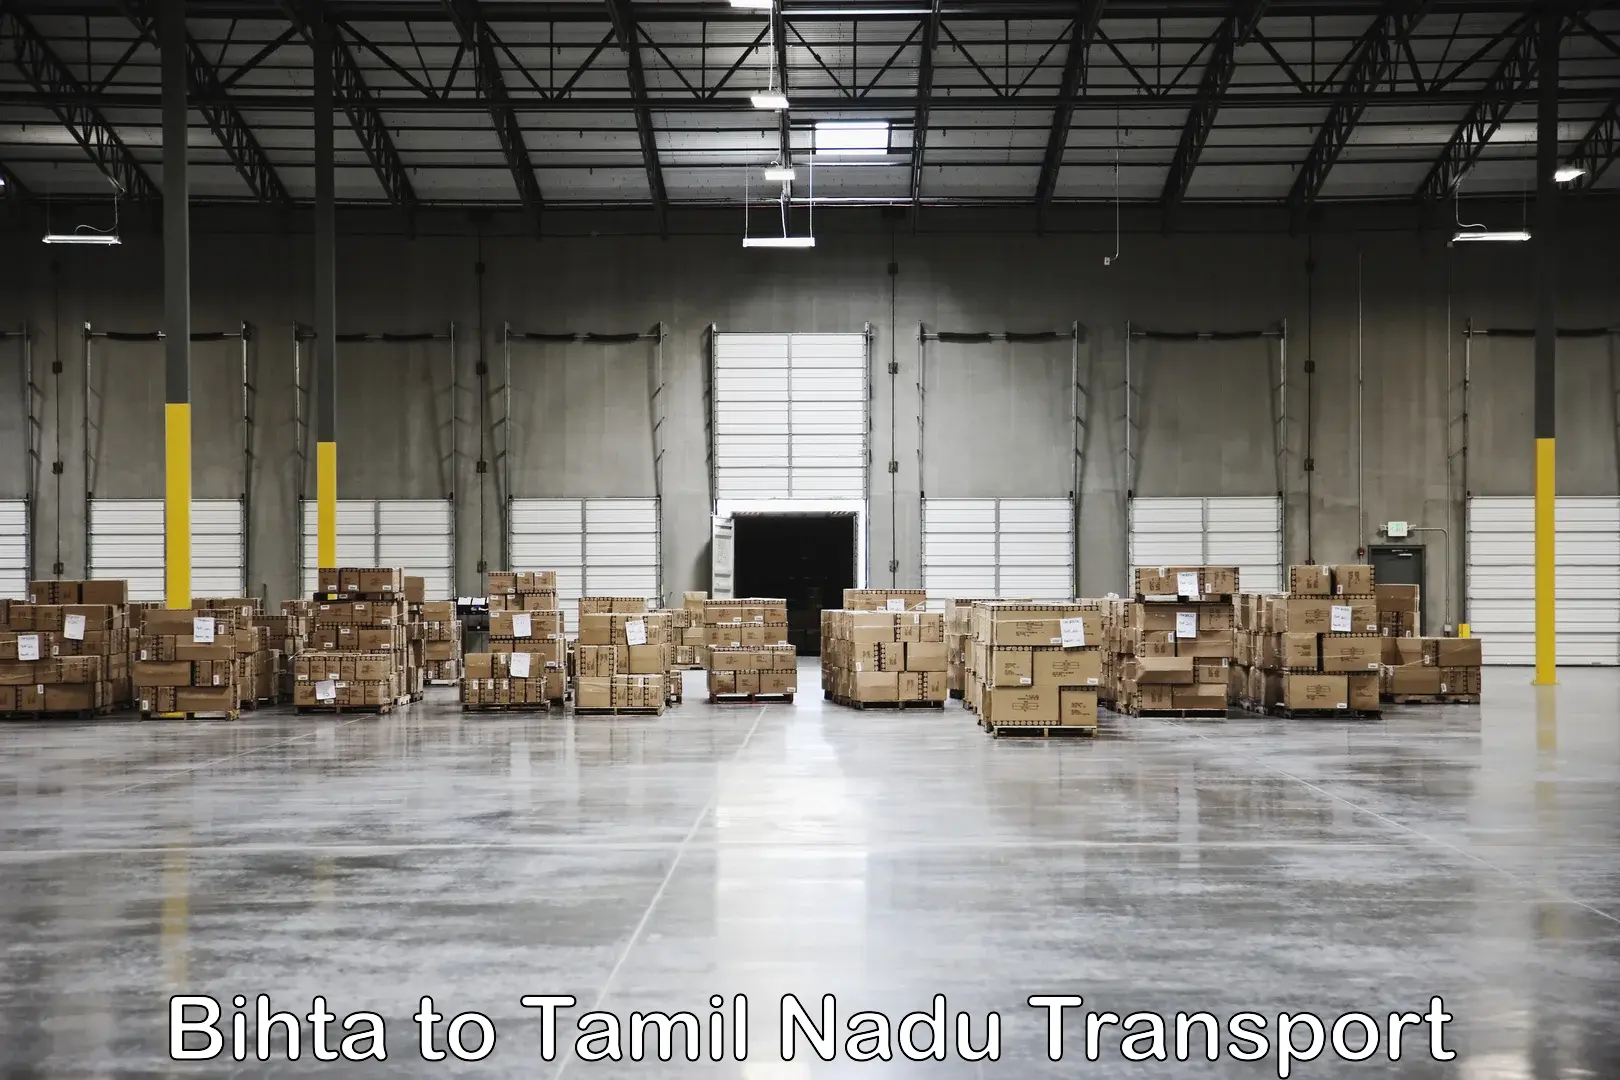 Vehicle transport services Bihta to Amrita Vishwa Vidyapeetham Coimbatore